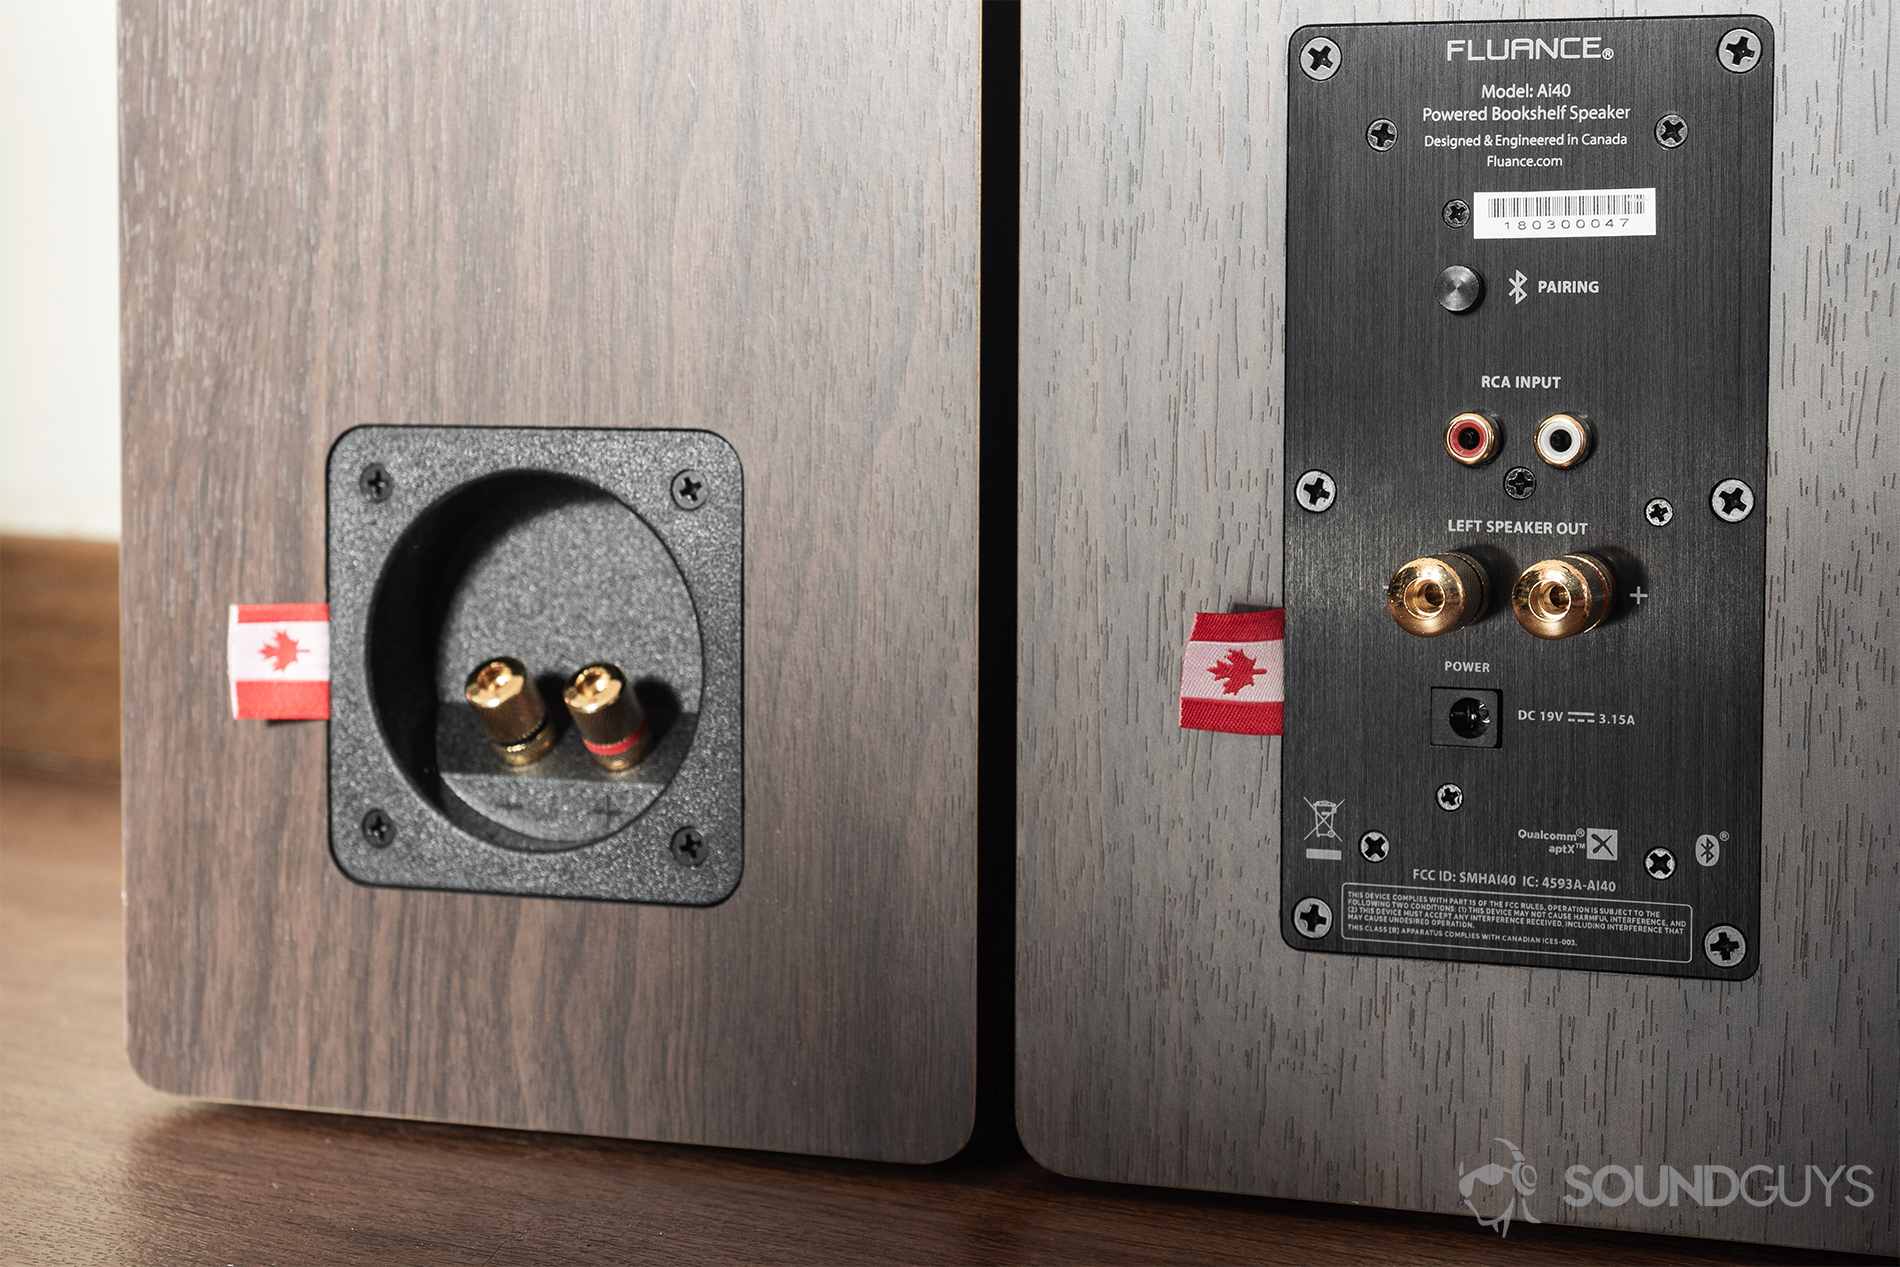 The Fluance Ai40 Review Loud Sound Innocuous Design Soundguys